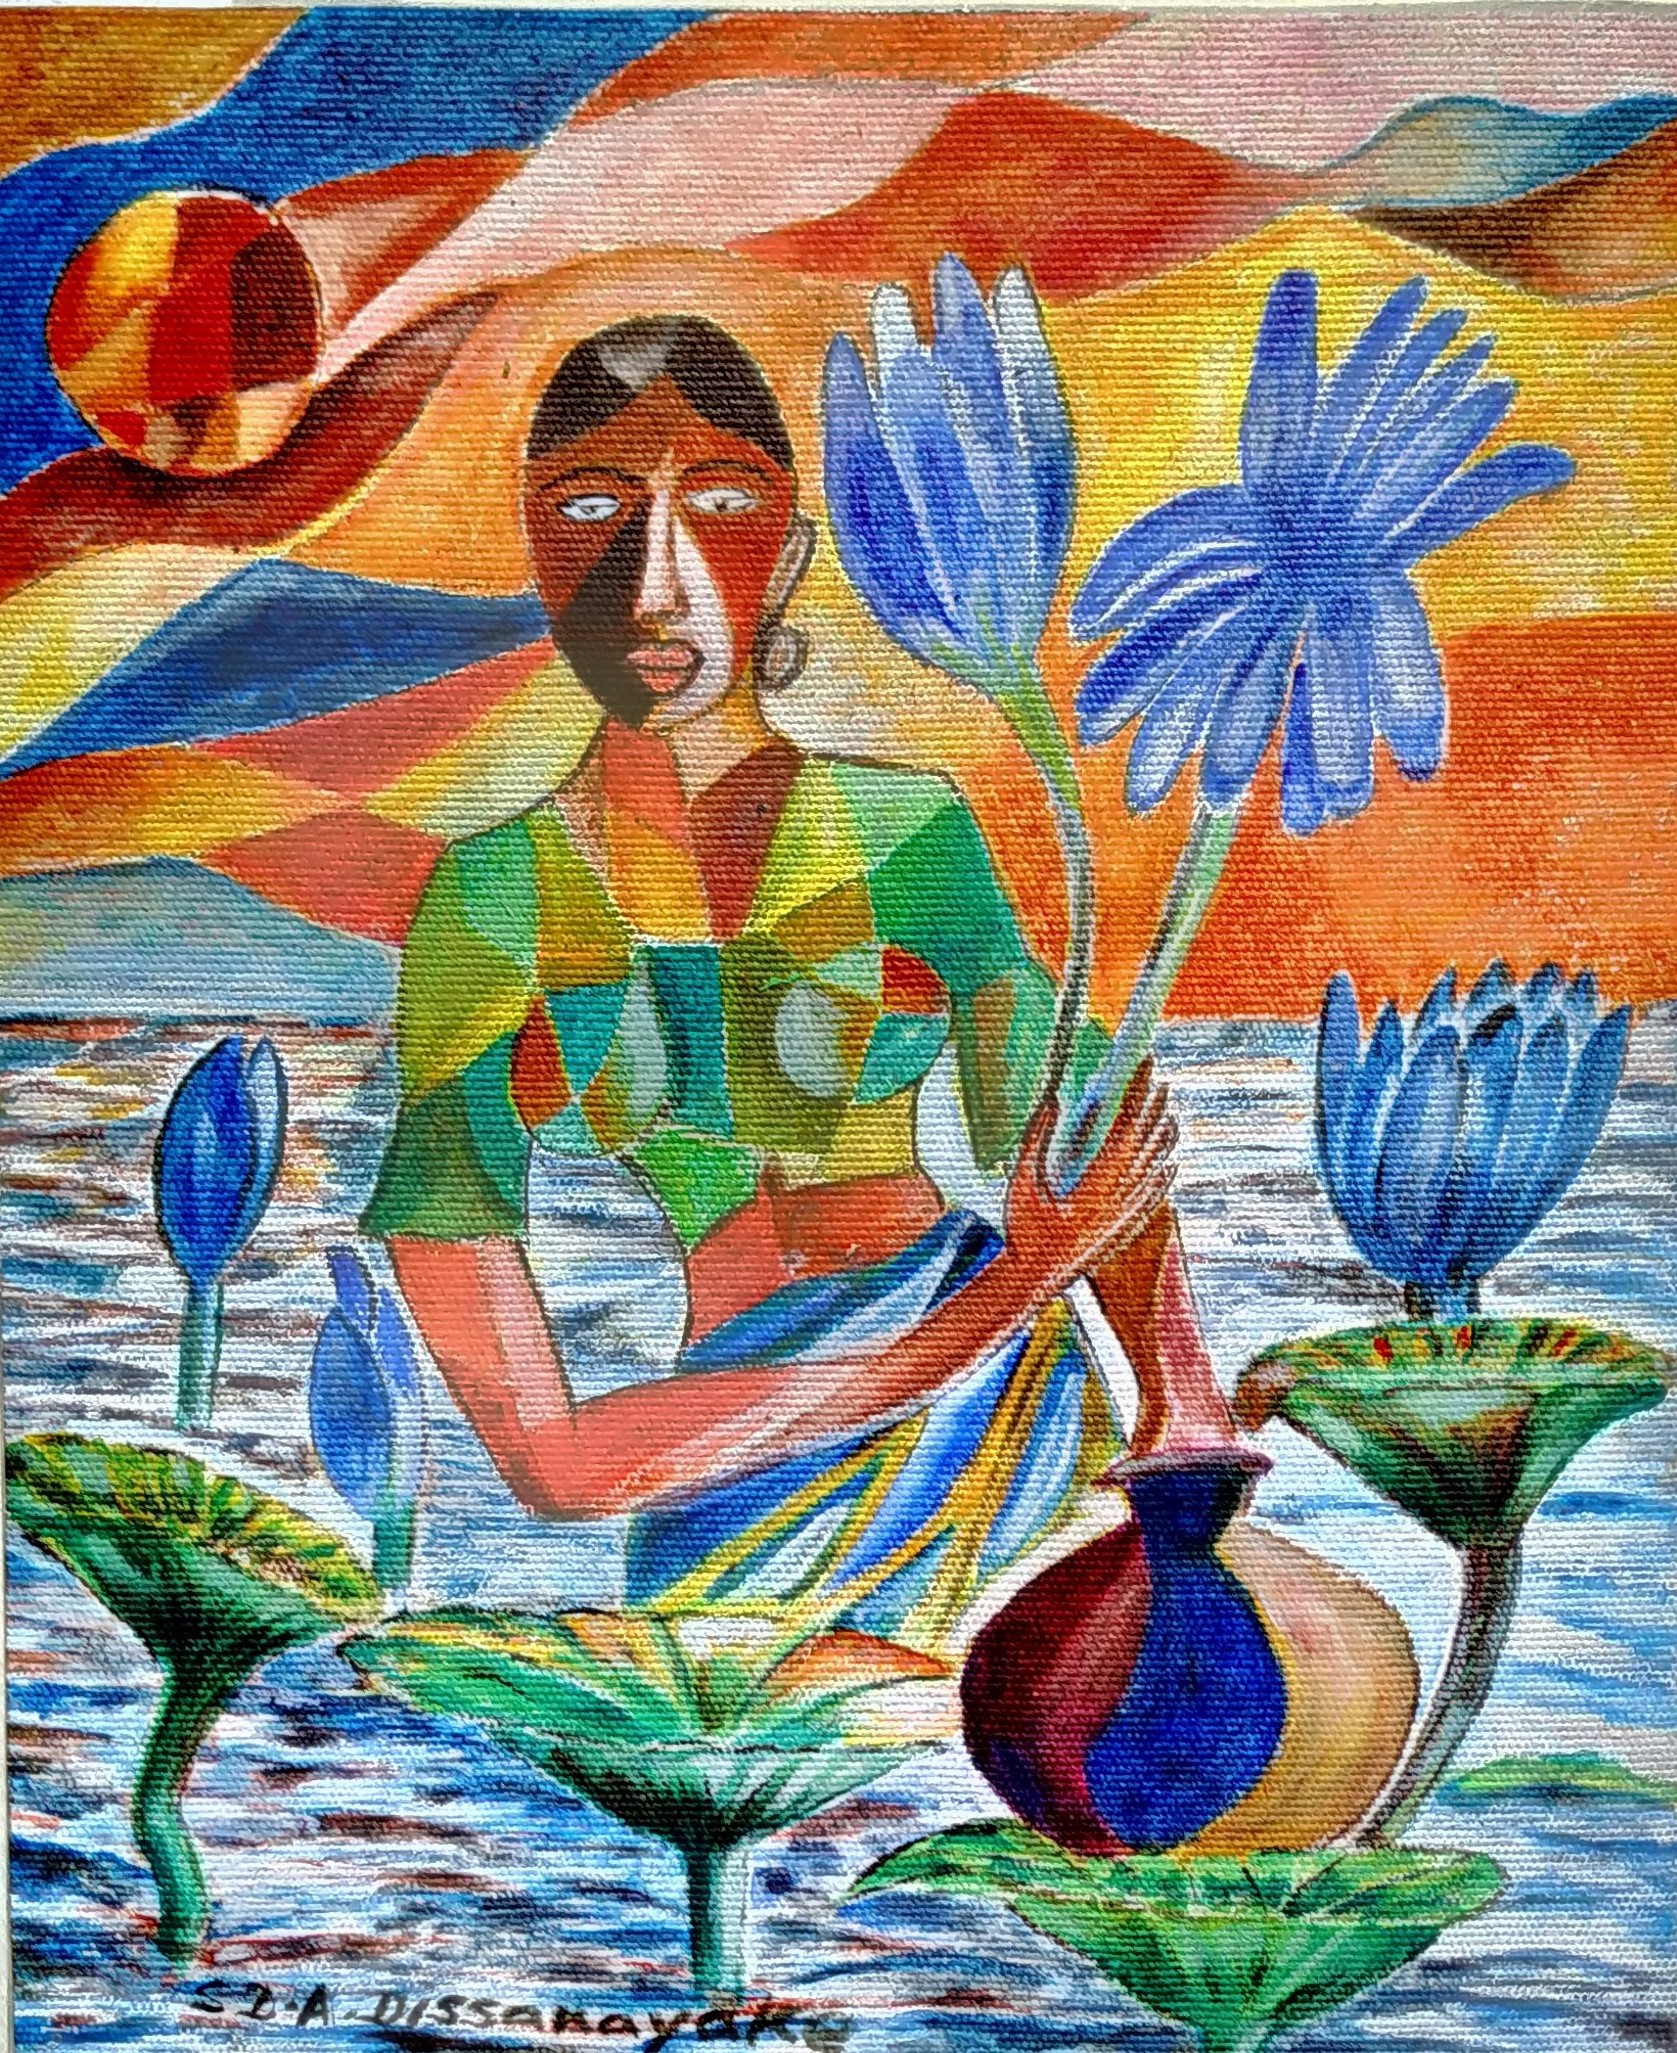 Woman with blue lotus by Amaradewa Dissanayake